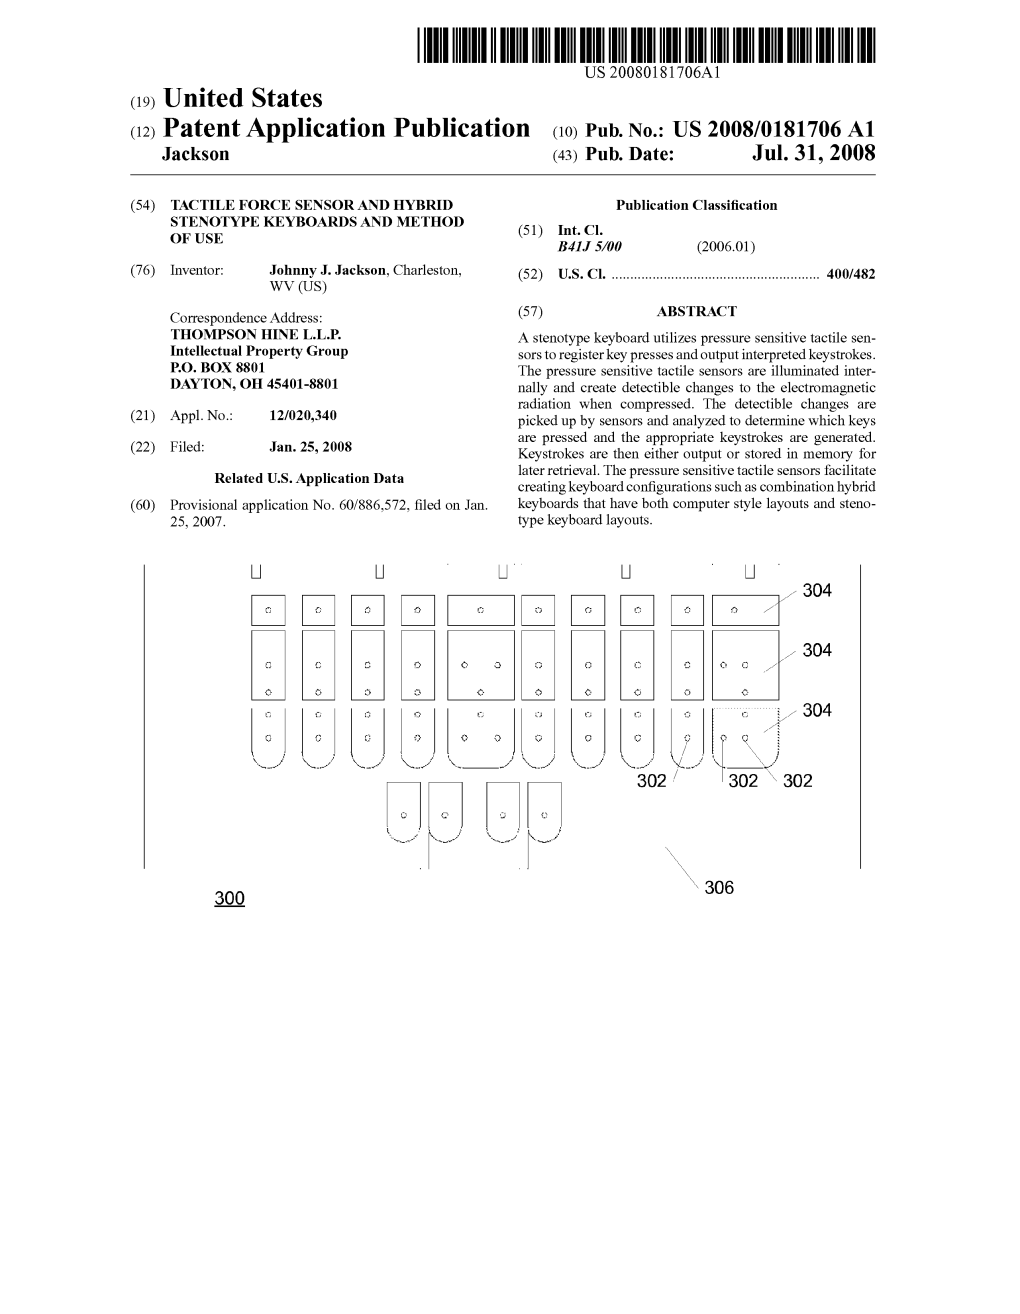 (12) Patent Application Publication (10) Pub. No.: US 2008/0181706 A1 Jackson (43) Pub